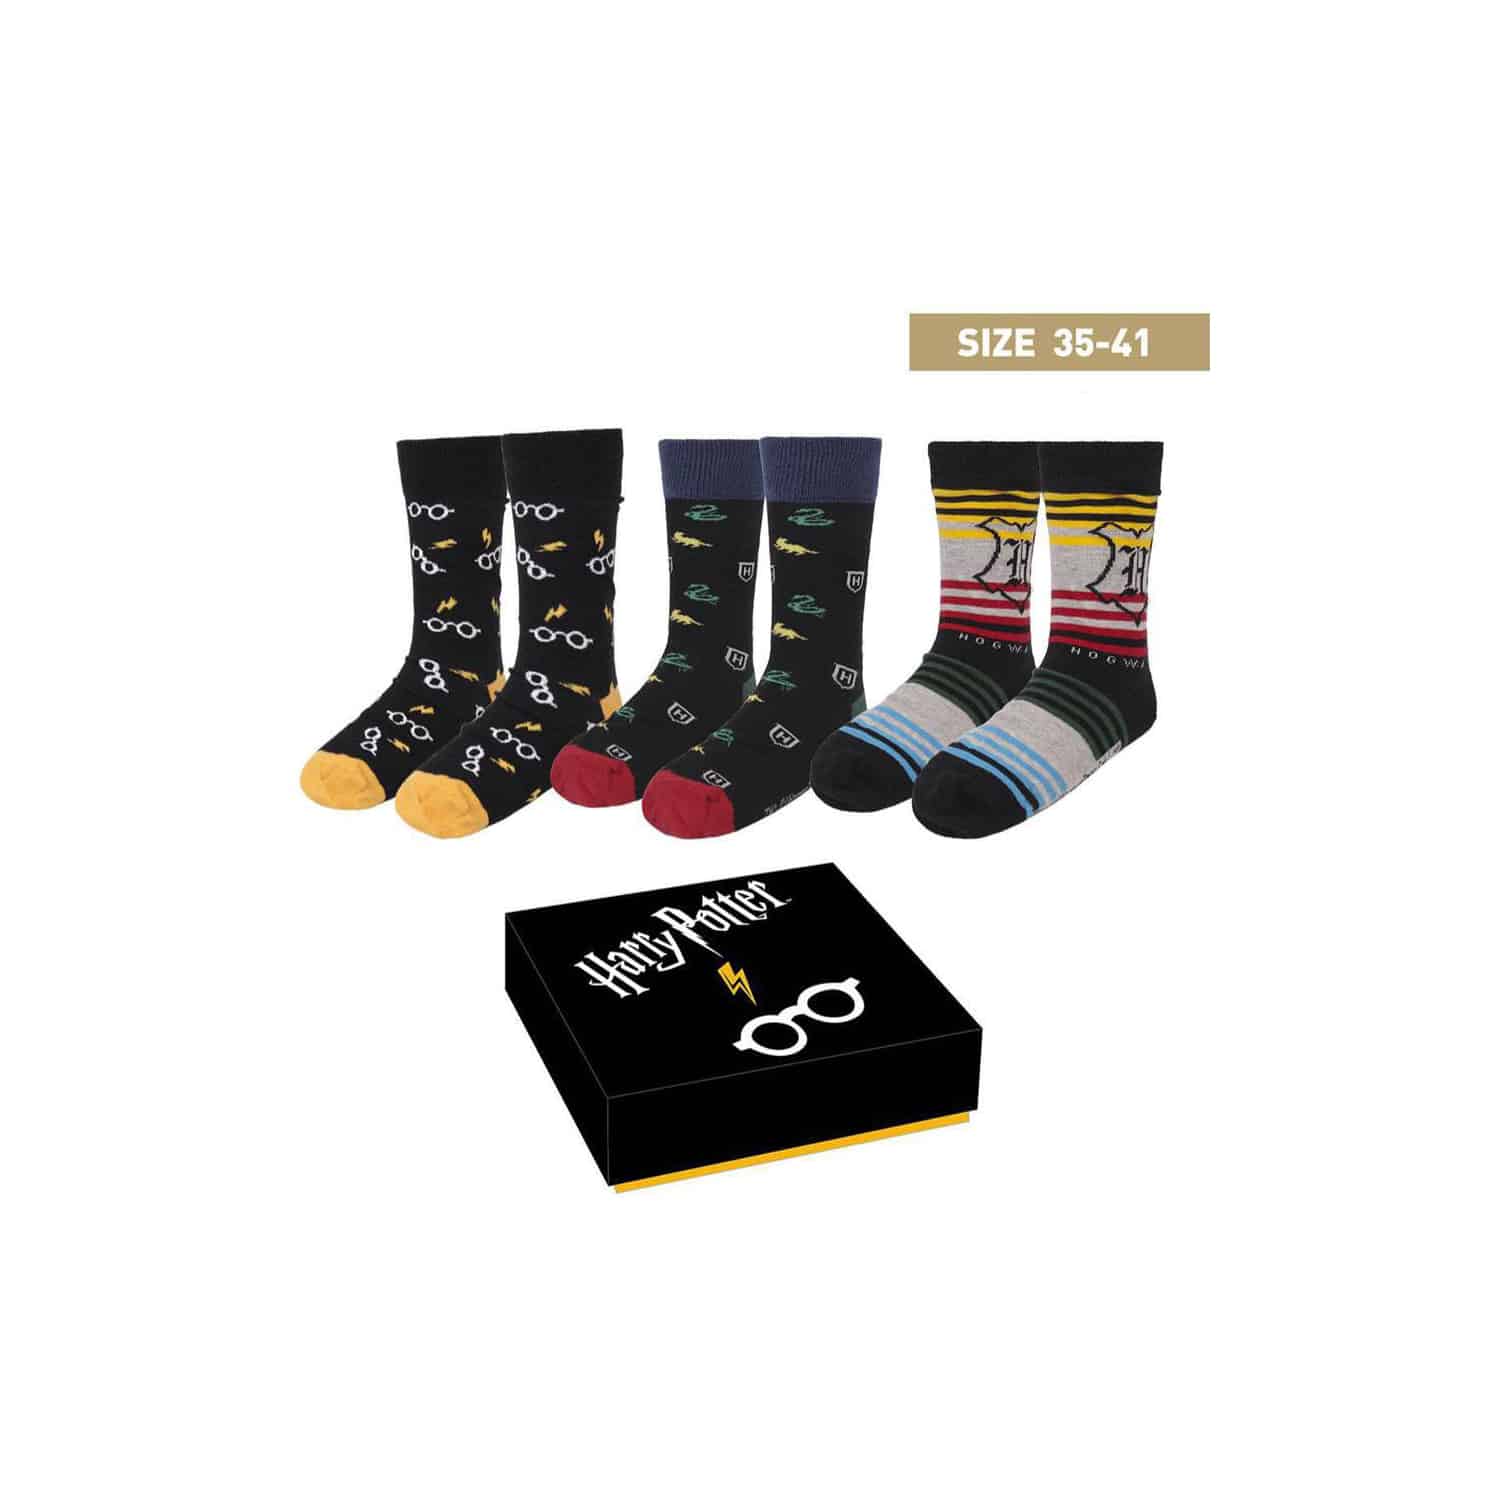 Harry Potter - Socks 3-Pack Crests (35/41)